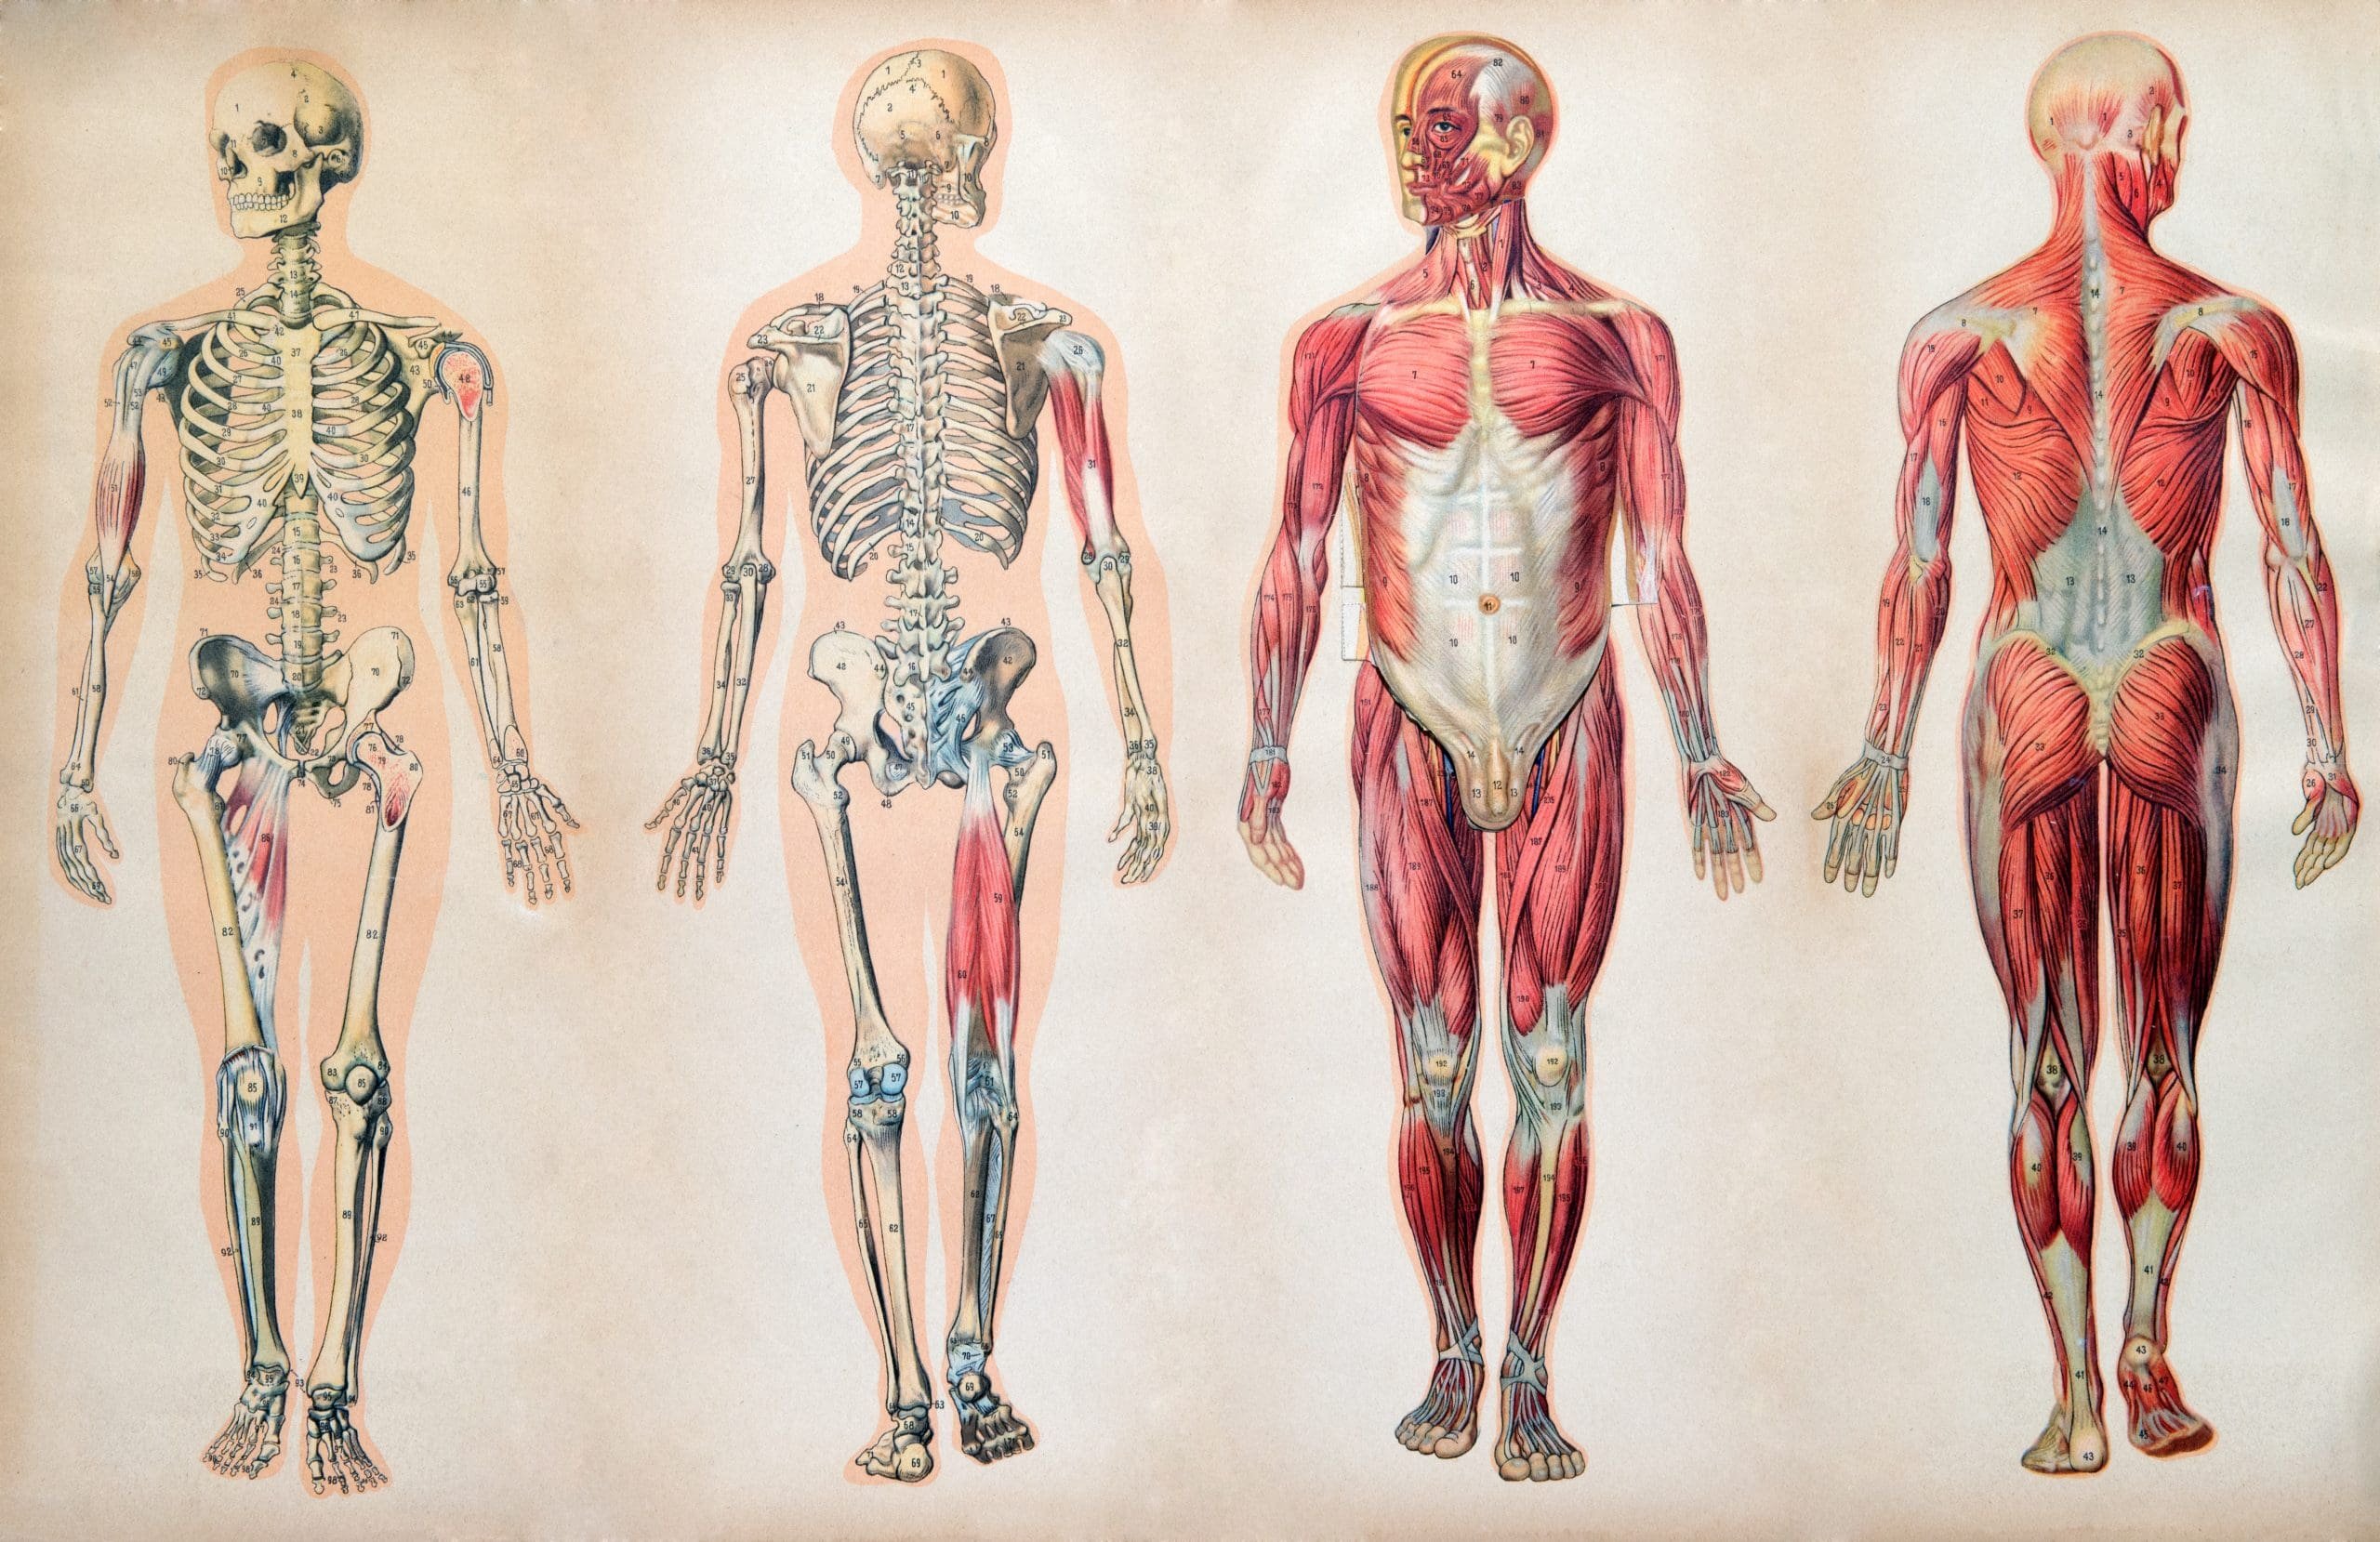 Анатомия человека 1. Анатомия человека скелет и мышцы. Анатомия тела человека мышцы и кости. Скелет человека с мышцами и органами. Строение человека скелет мышцы кожа.